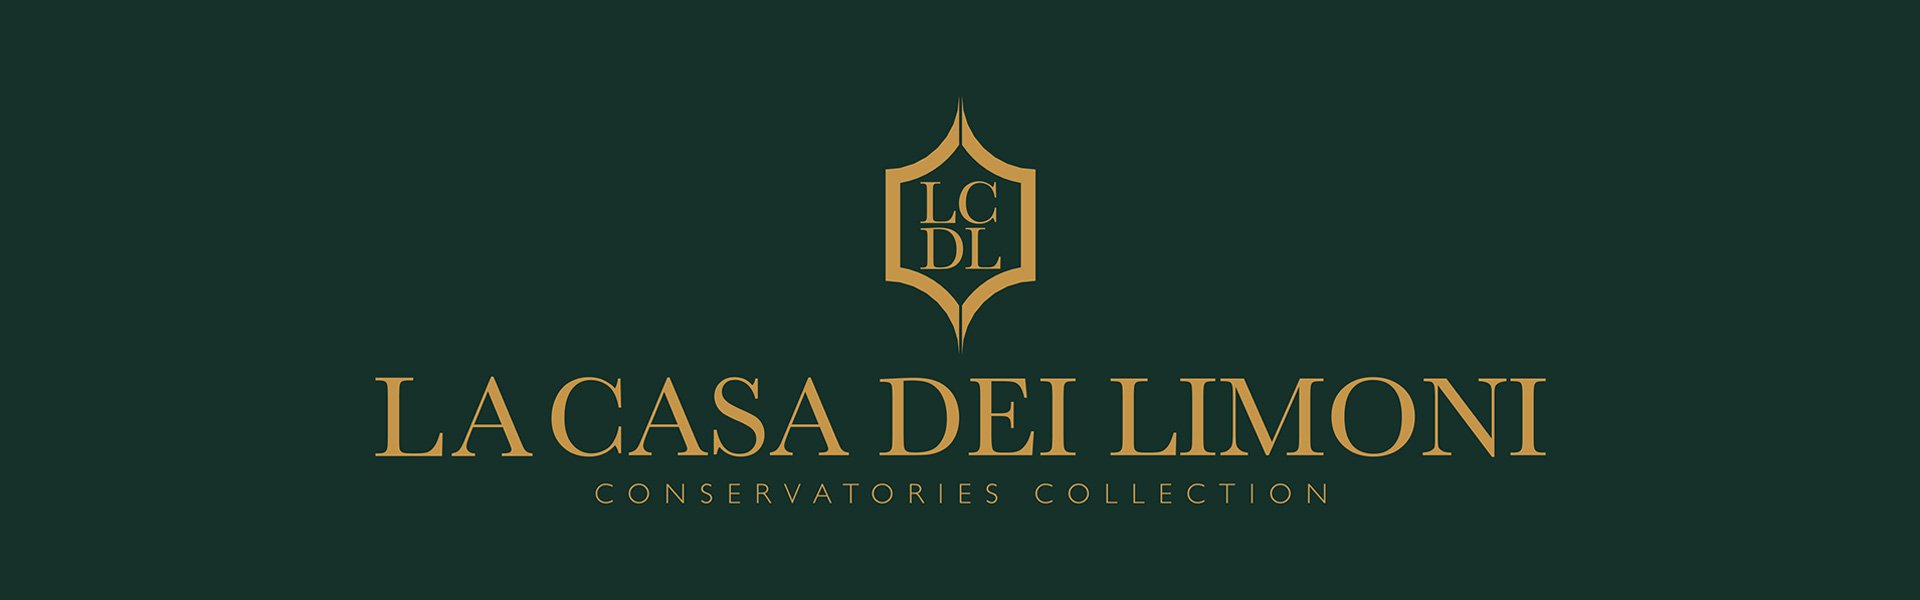 DFN-srl-la-casa-dei-limoni-collections